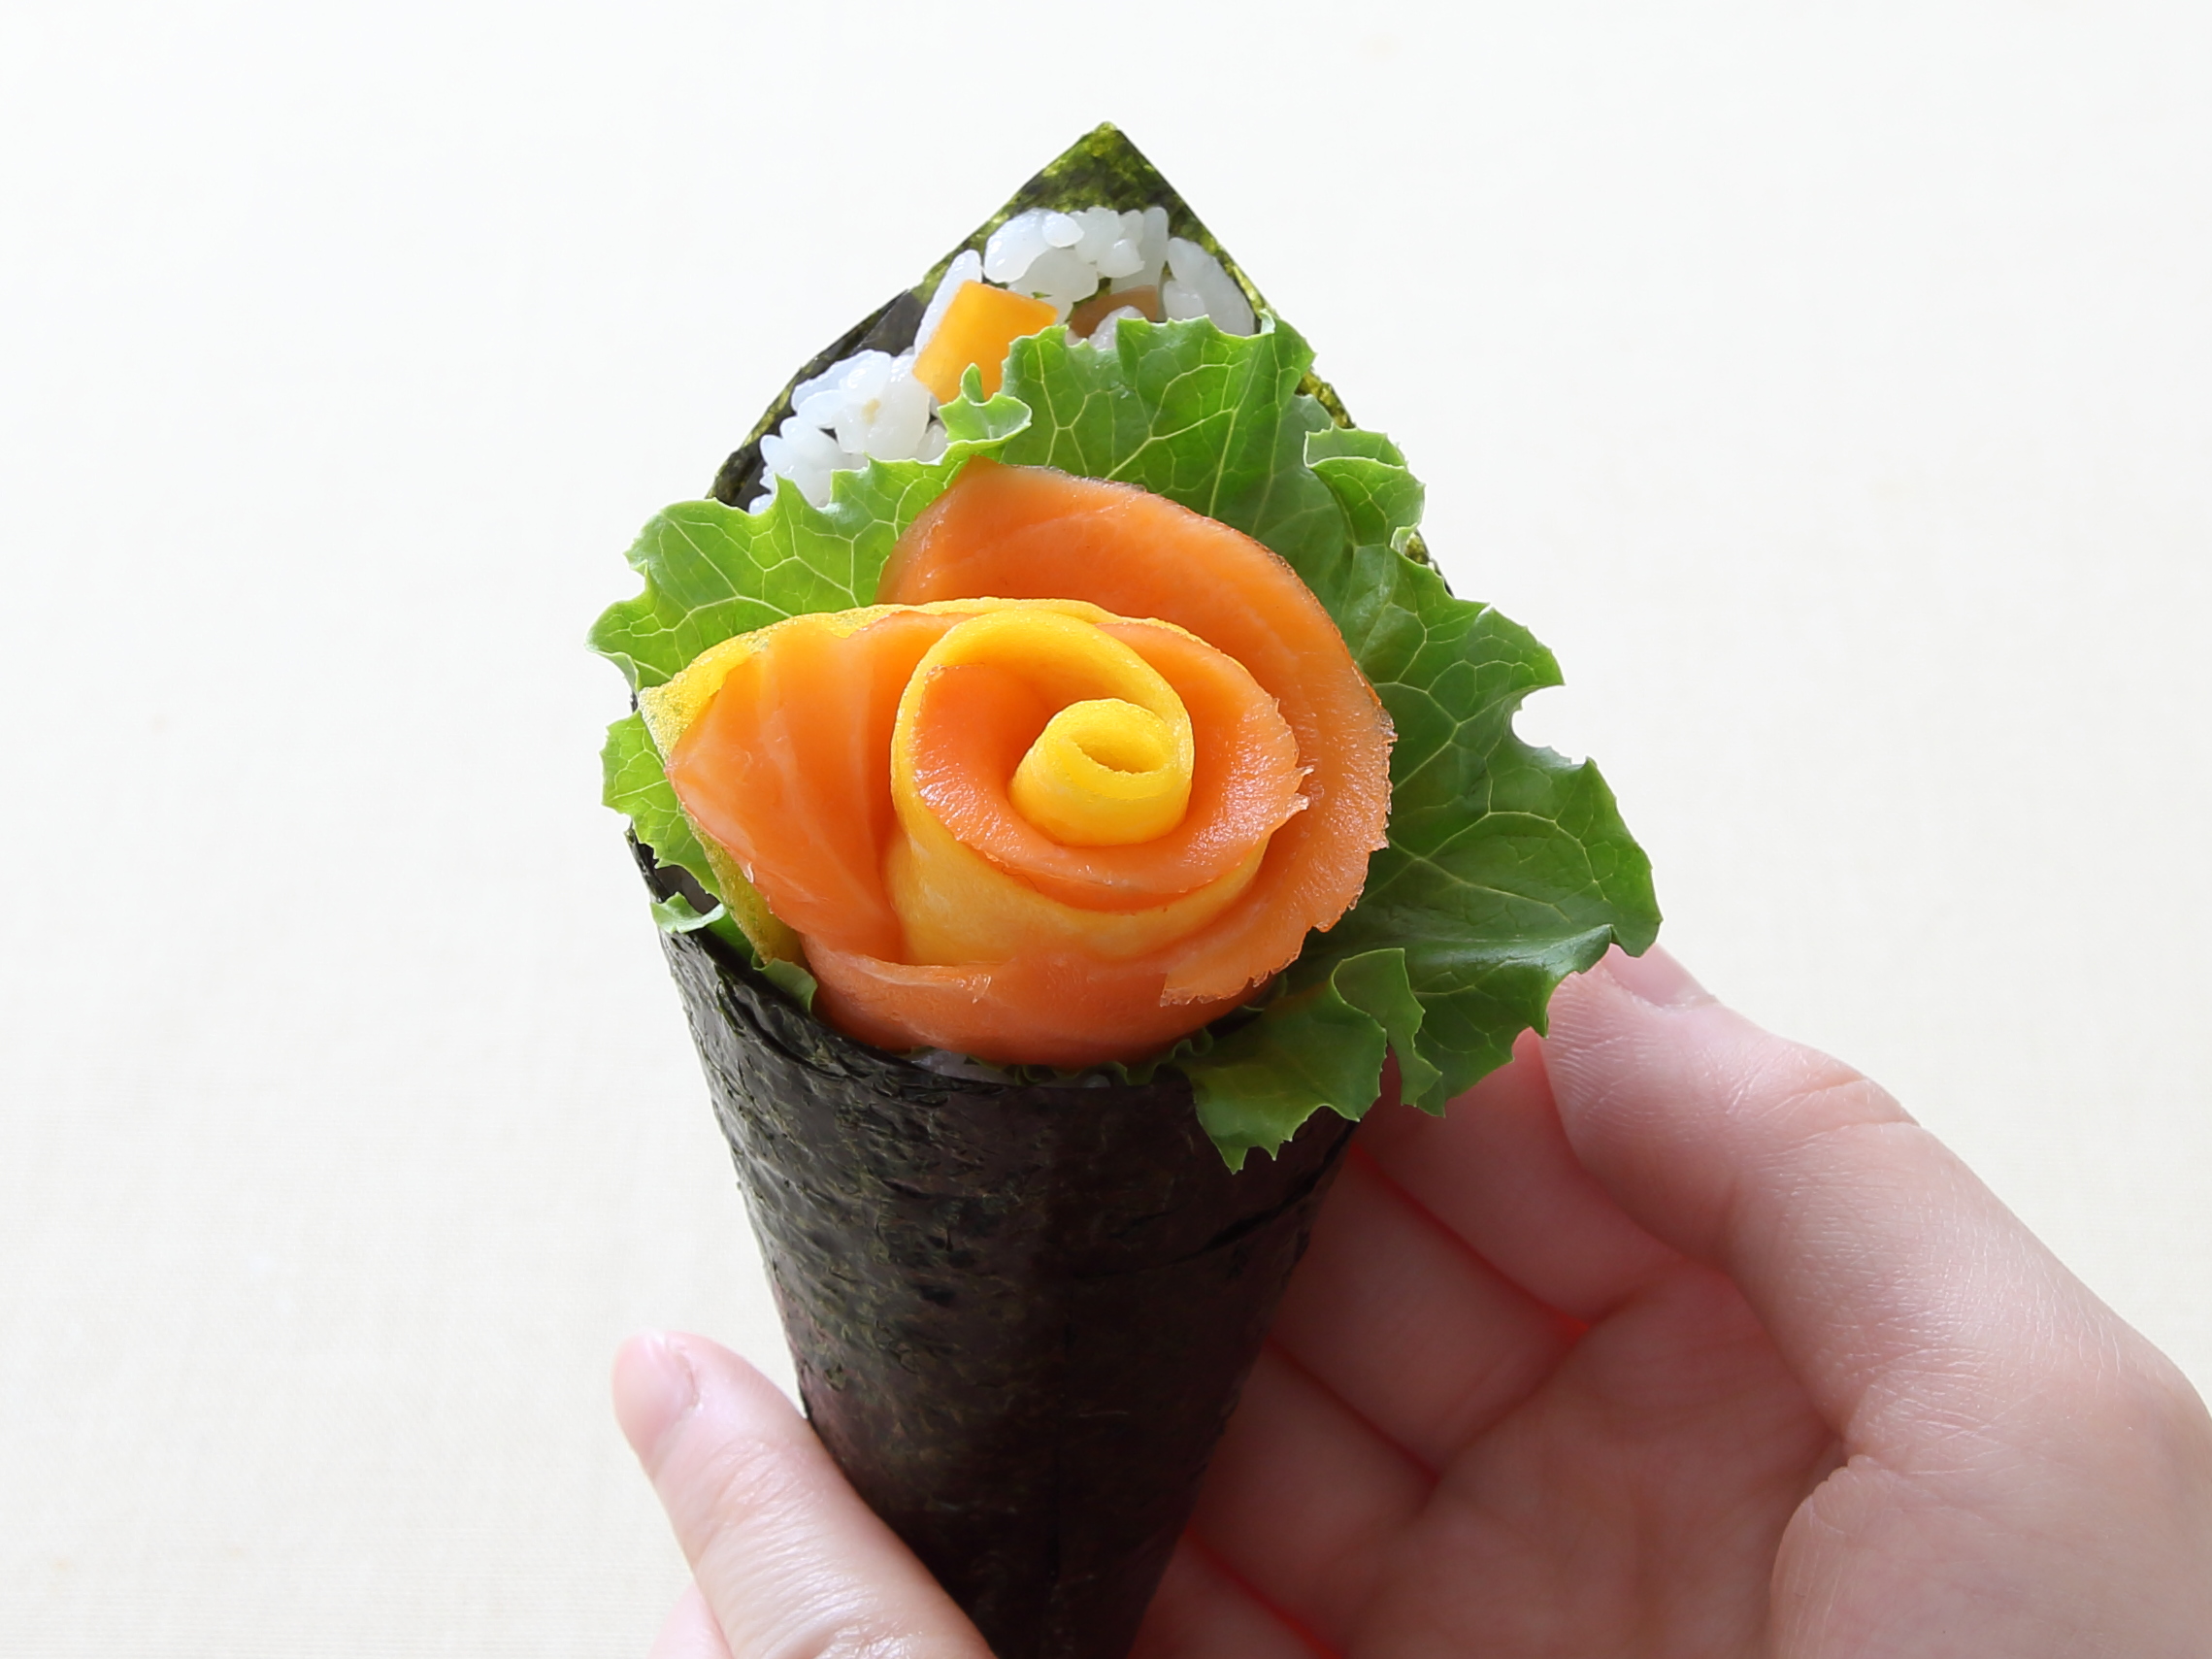 想い伝える花束手巻き寿司 五目 サーモン のレシピ 作り方 おうちレシピ ミツカングループ